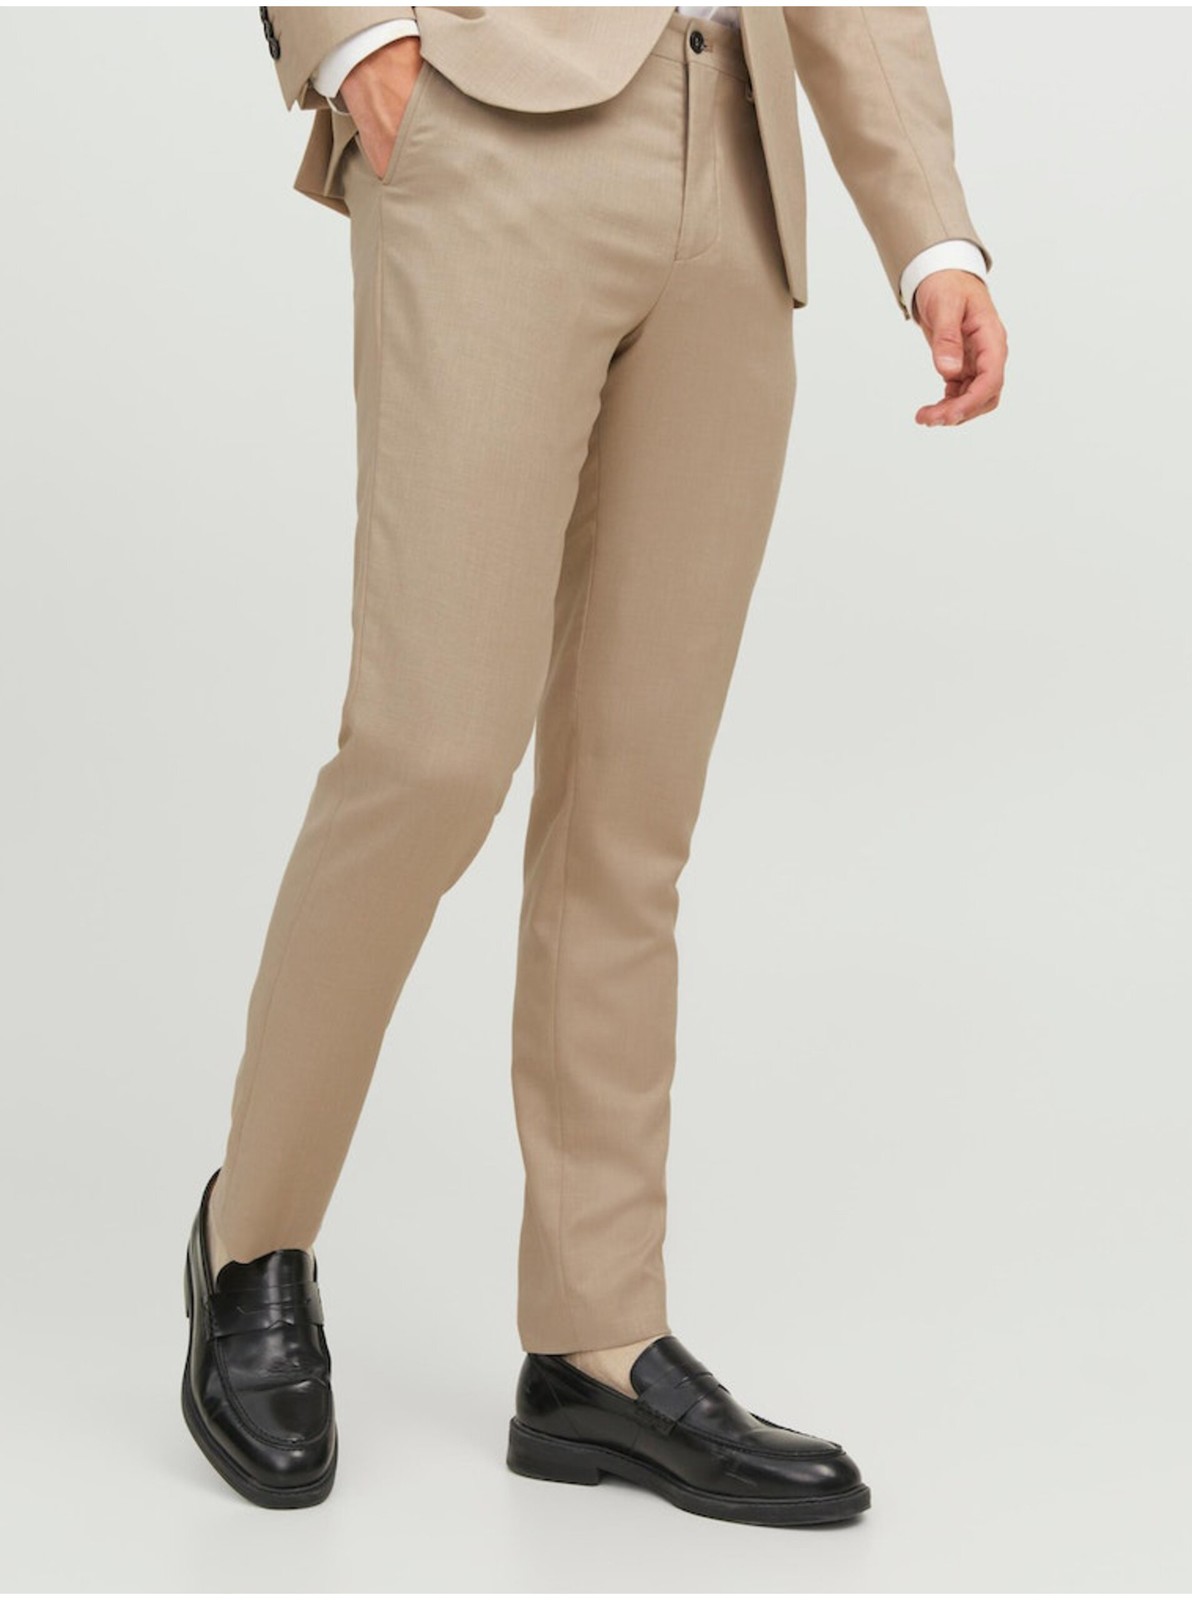 Béžové pánské kalhoty s příměsí vlny Jack & Jones Solaris - Pánské